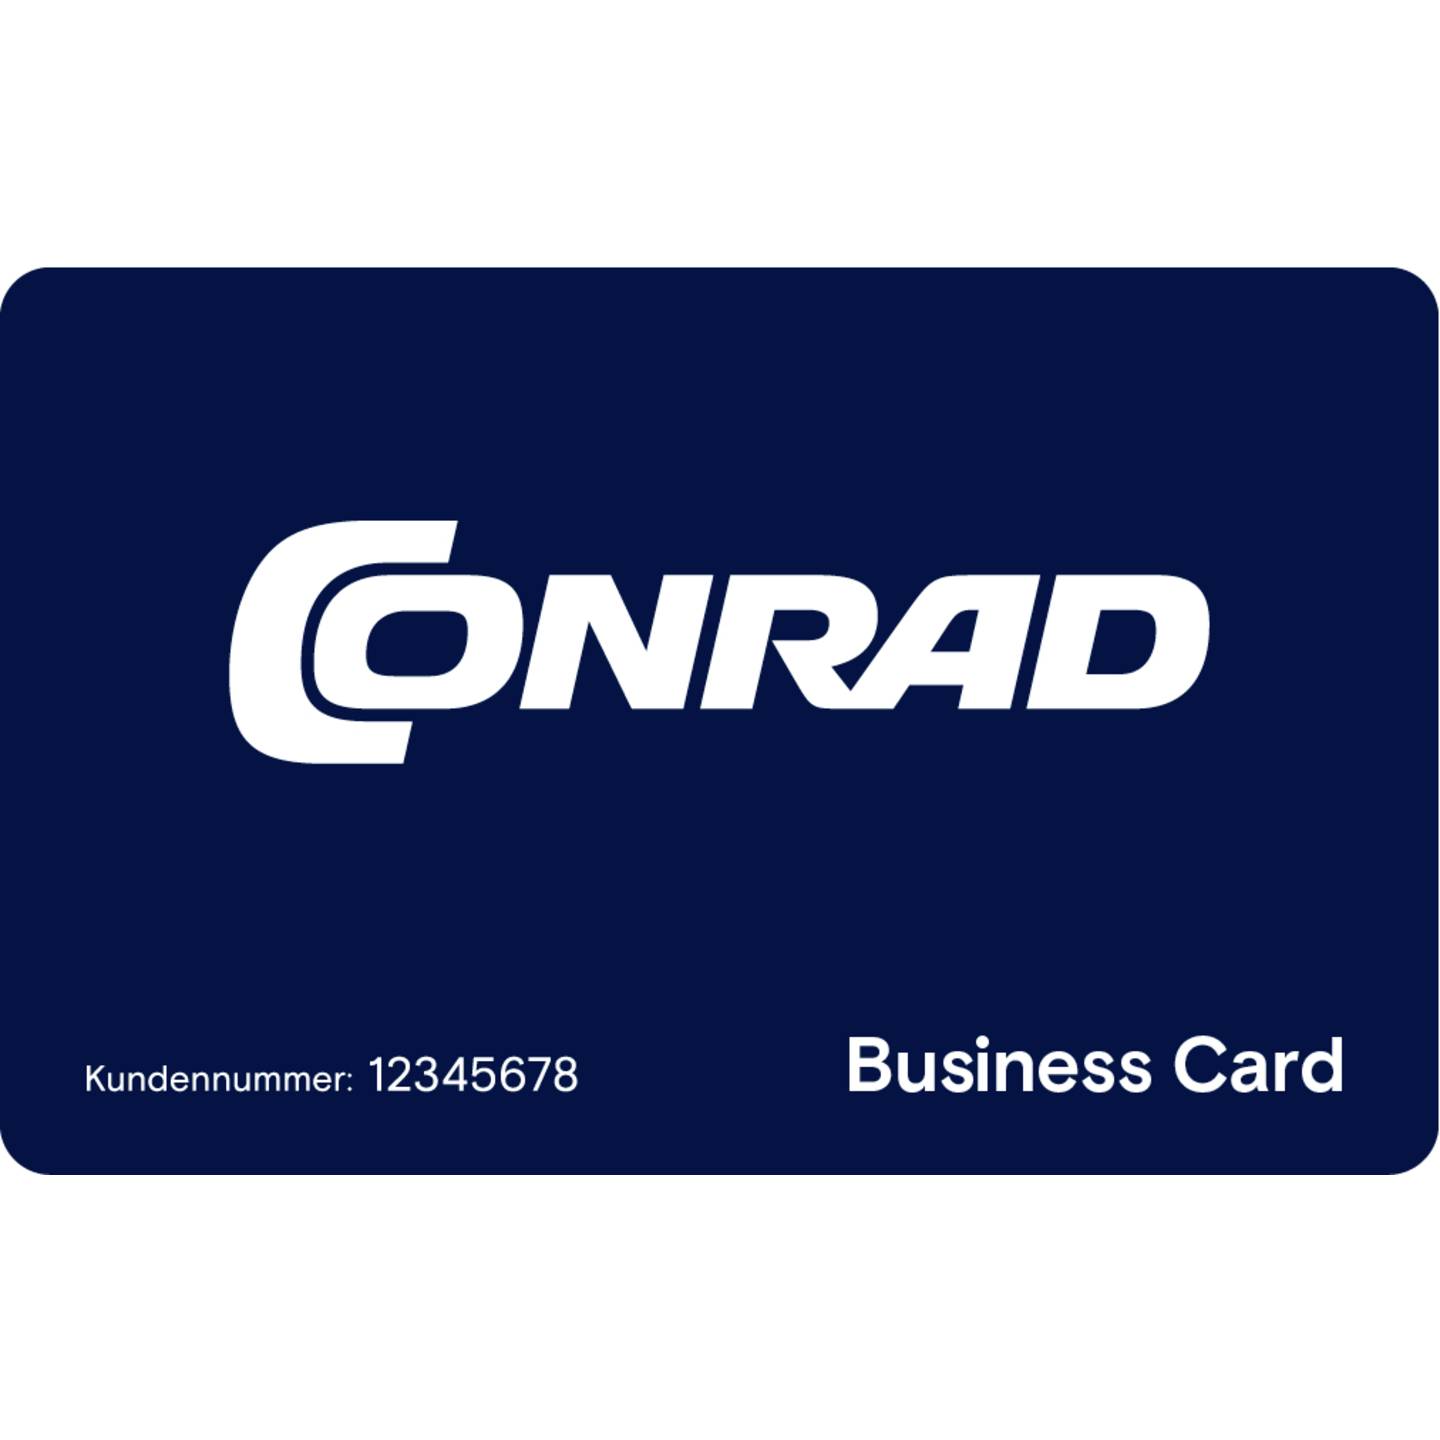 Business Card kostenlos anfordern »